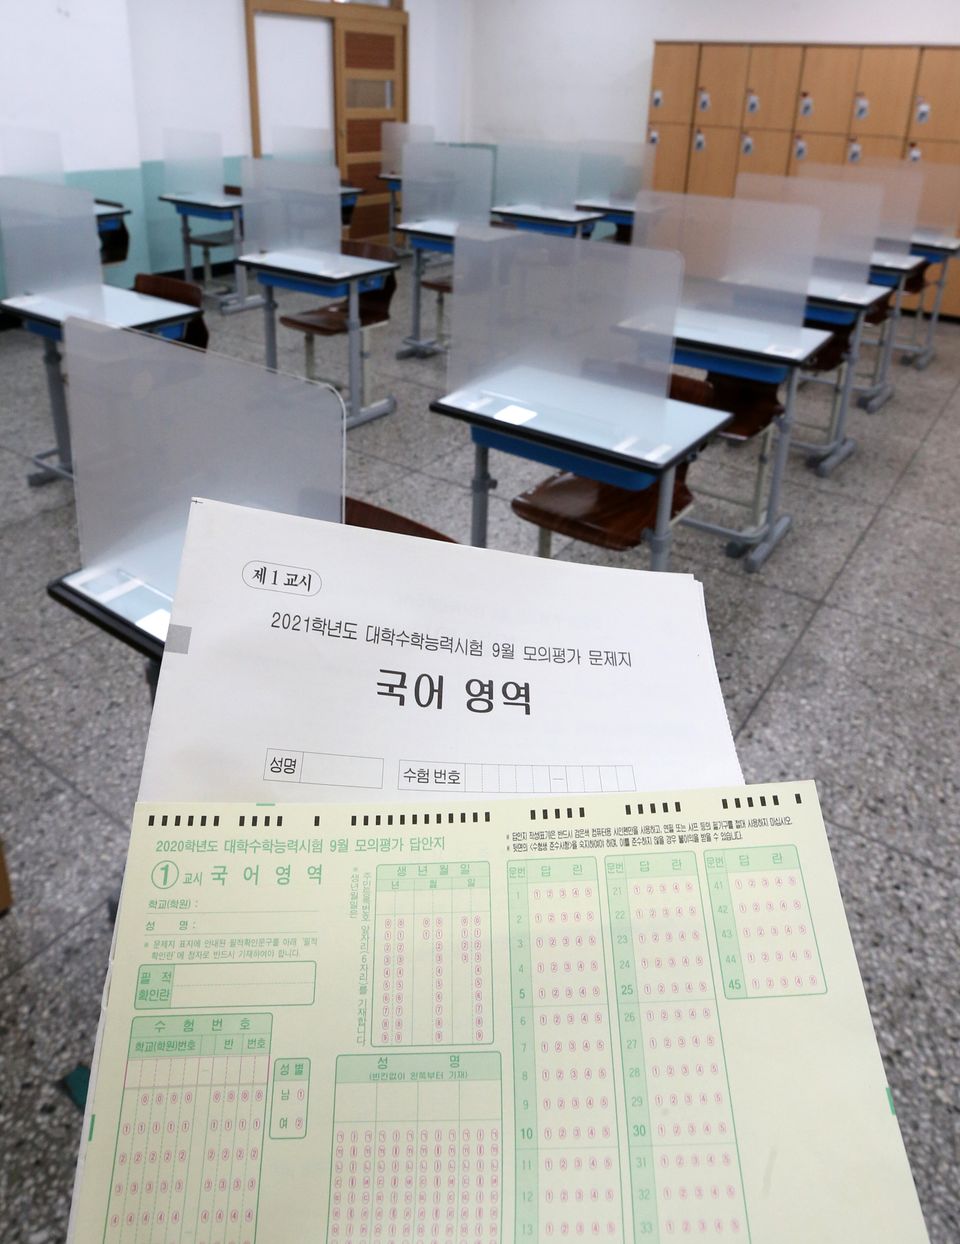 2021학년도 대학수학능력시험을 엿새 앞둔 27일 오후 서울 송파구 잠실고등학교에 마련된 고사장에 가림막이 설치되어 있다.